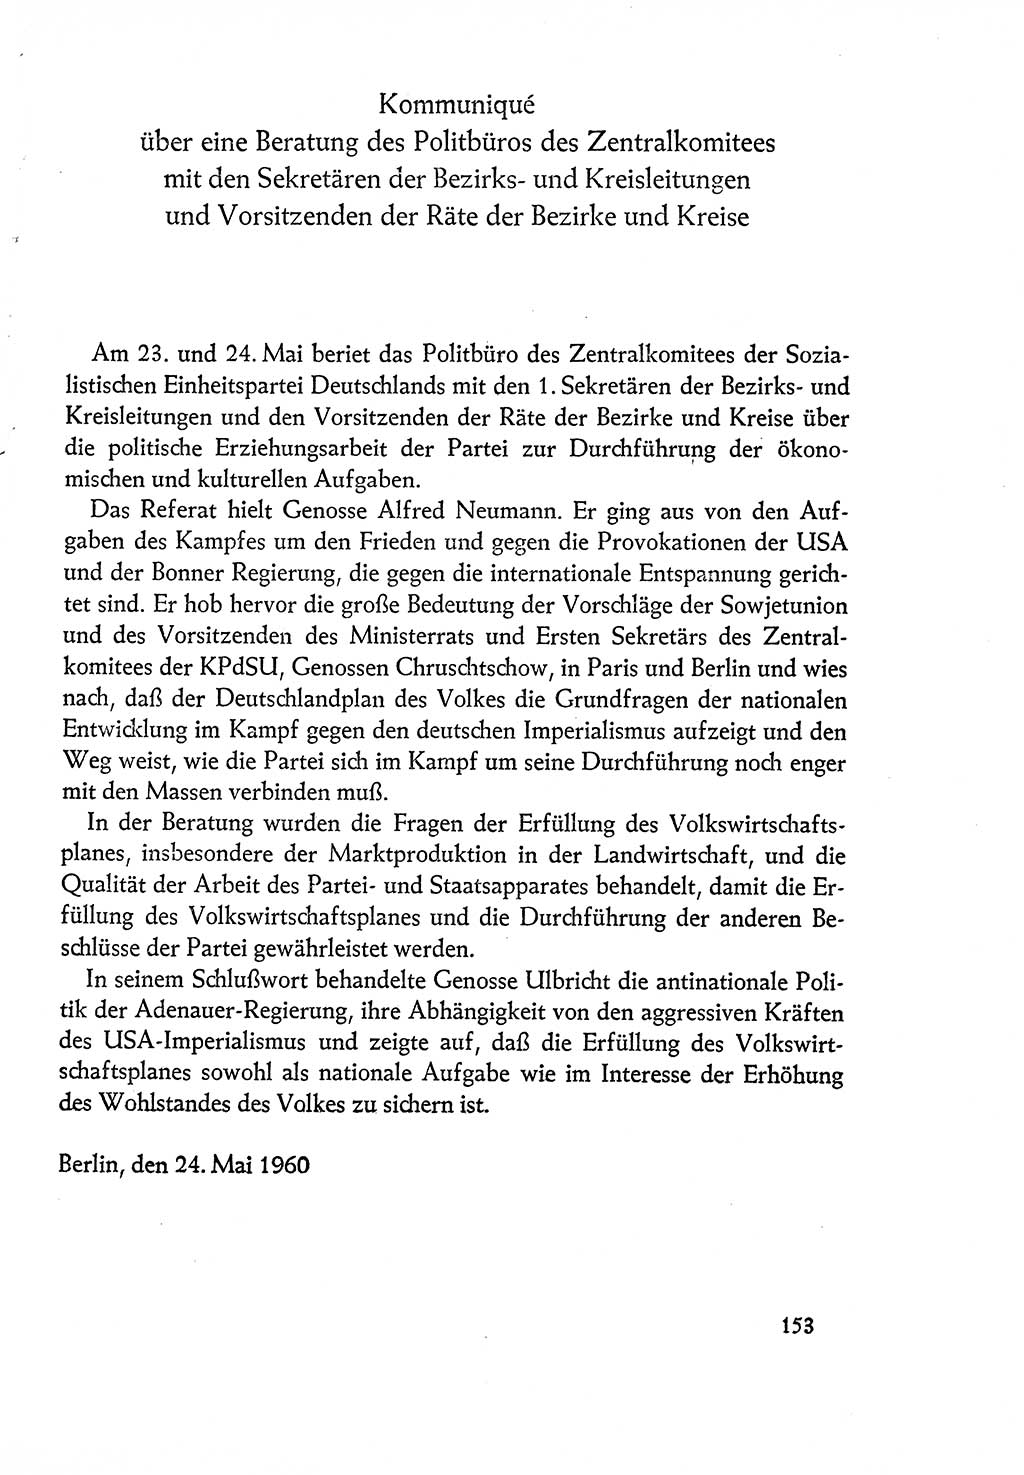 Dokumente der Sozialistischen Einheitspartei Deutschlands (SED) [Deutsche Demokratische Republik (DDR)] 1960-1961, Seite 153 (Dok. SED DDR 1960-1961, S. 153)